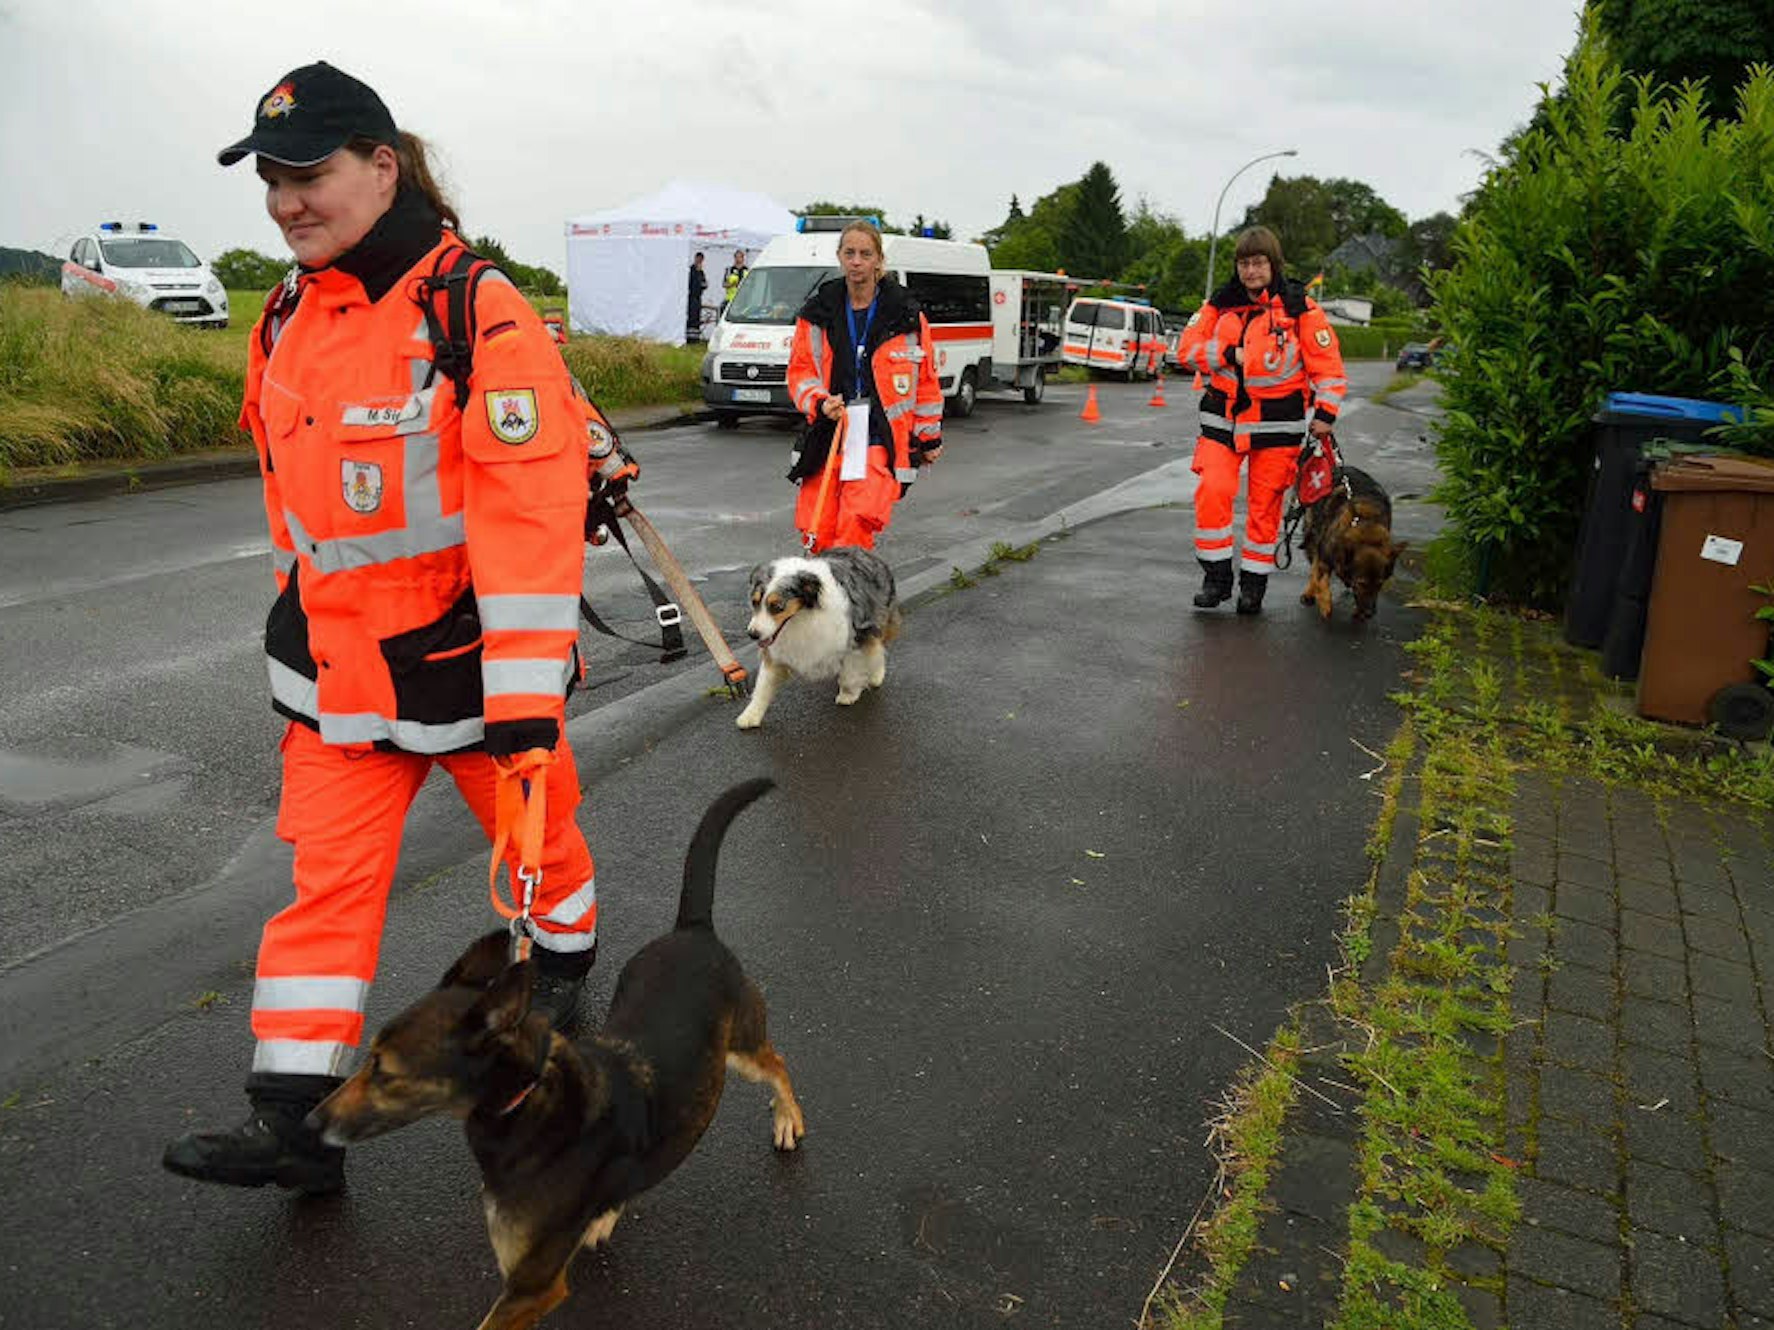 Rettungshunde der Johanniter suchten bei Moitzfeld nach der vermissten Frau – mit Erfolg.